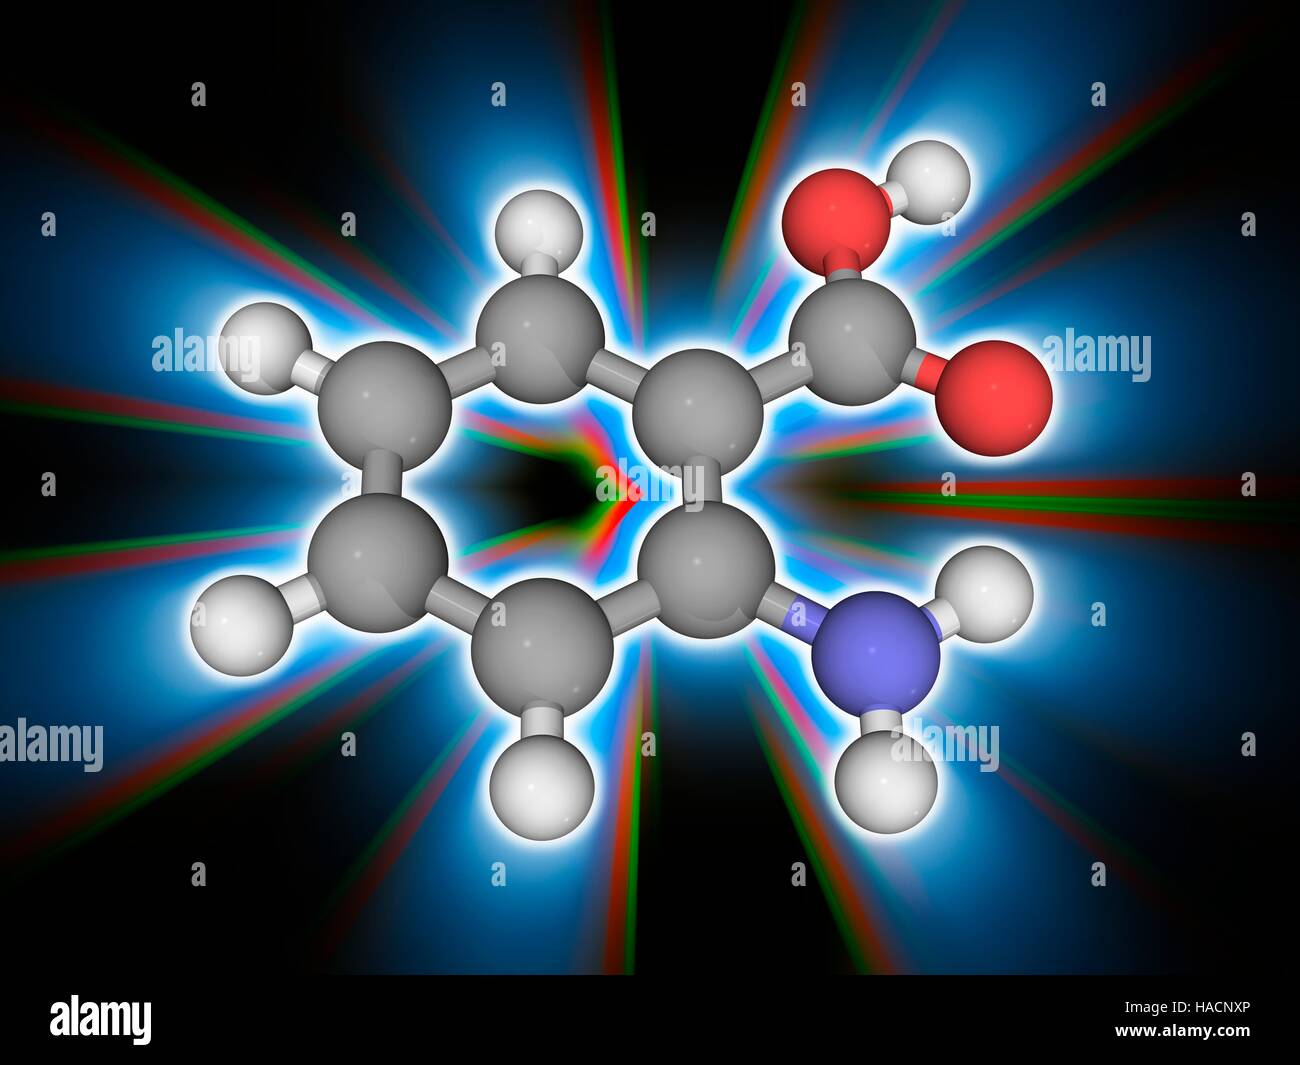 Anthranilsäure Säure. Molekülmodell der aromatischen Verbindung Anthranilsäure Säure (C7. H7. N.O2). Diese organische Verbindung dient als Zwischenprodukt zur Herstellung von Farbstoffen, Pigmenten und Saccharin. Atome als Kugeln dargestellt werden und sind farblich gekennzeichnet: Kohlenstoff (grau), Wasserstoff (weiß), Stickstoff (blau) und Sauerstoff (rot). Abbildung. Stockfoto